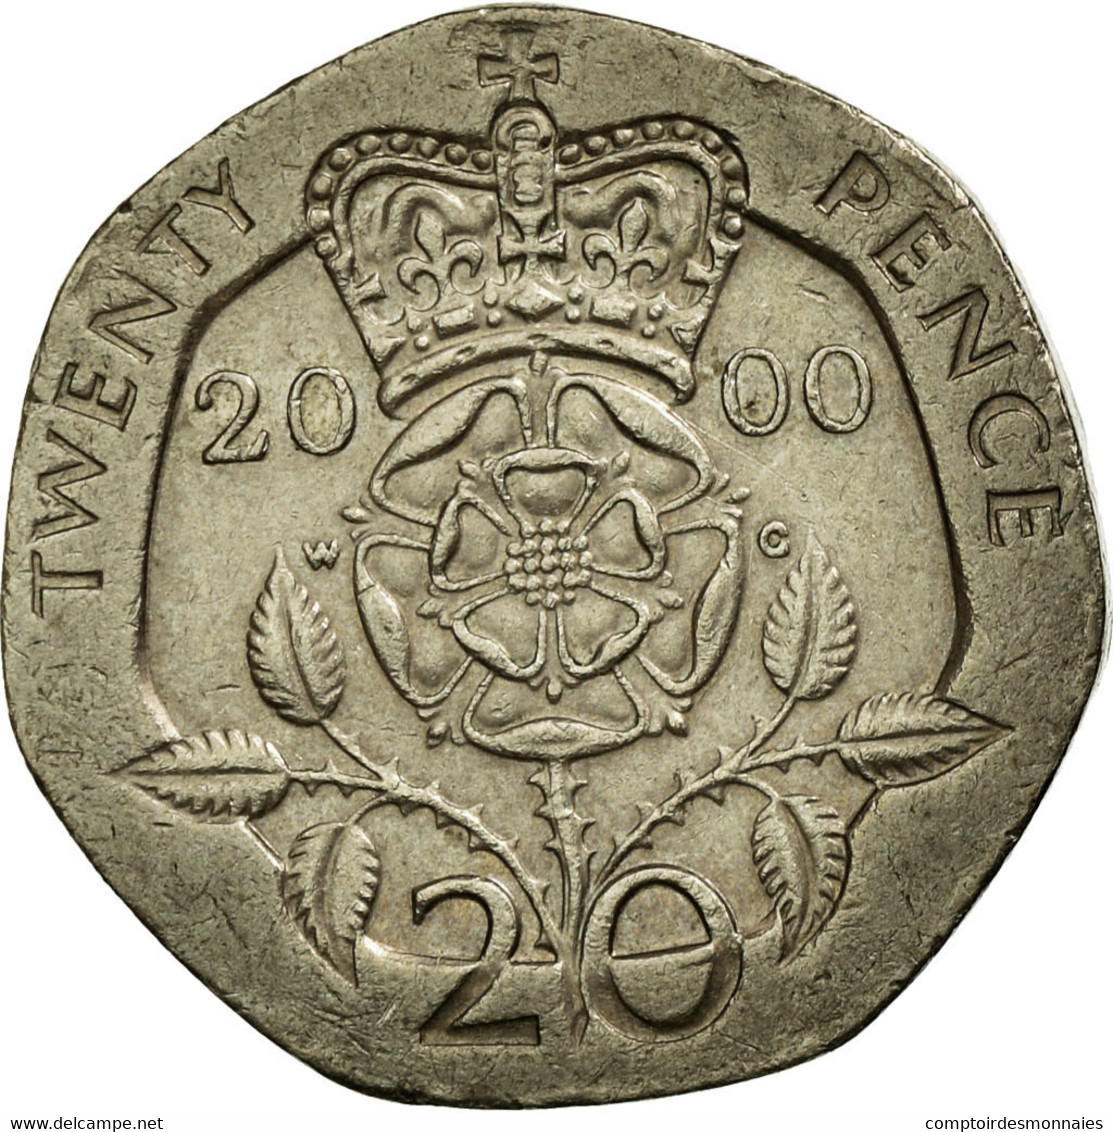 Monnaie, Grande-Bretagne, Elizabeth II, 20 Pence, 2000, TTB, Copper-nickel - 20 Pence